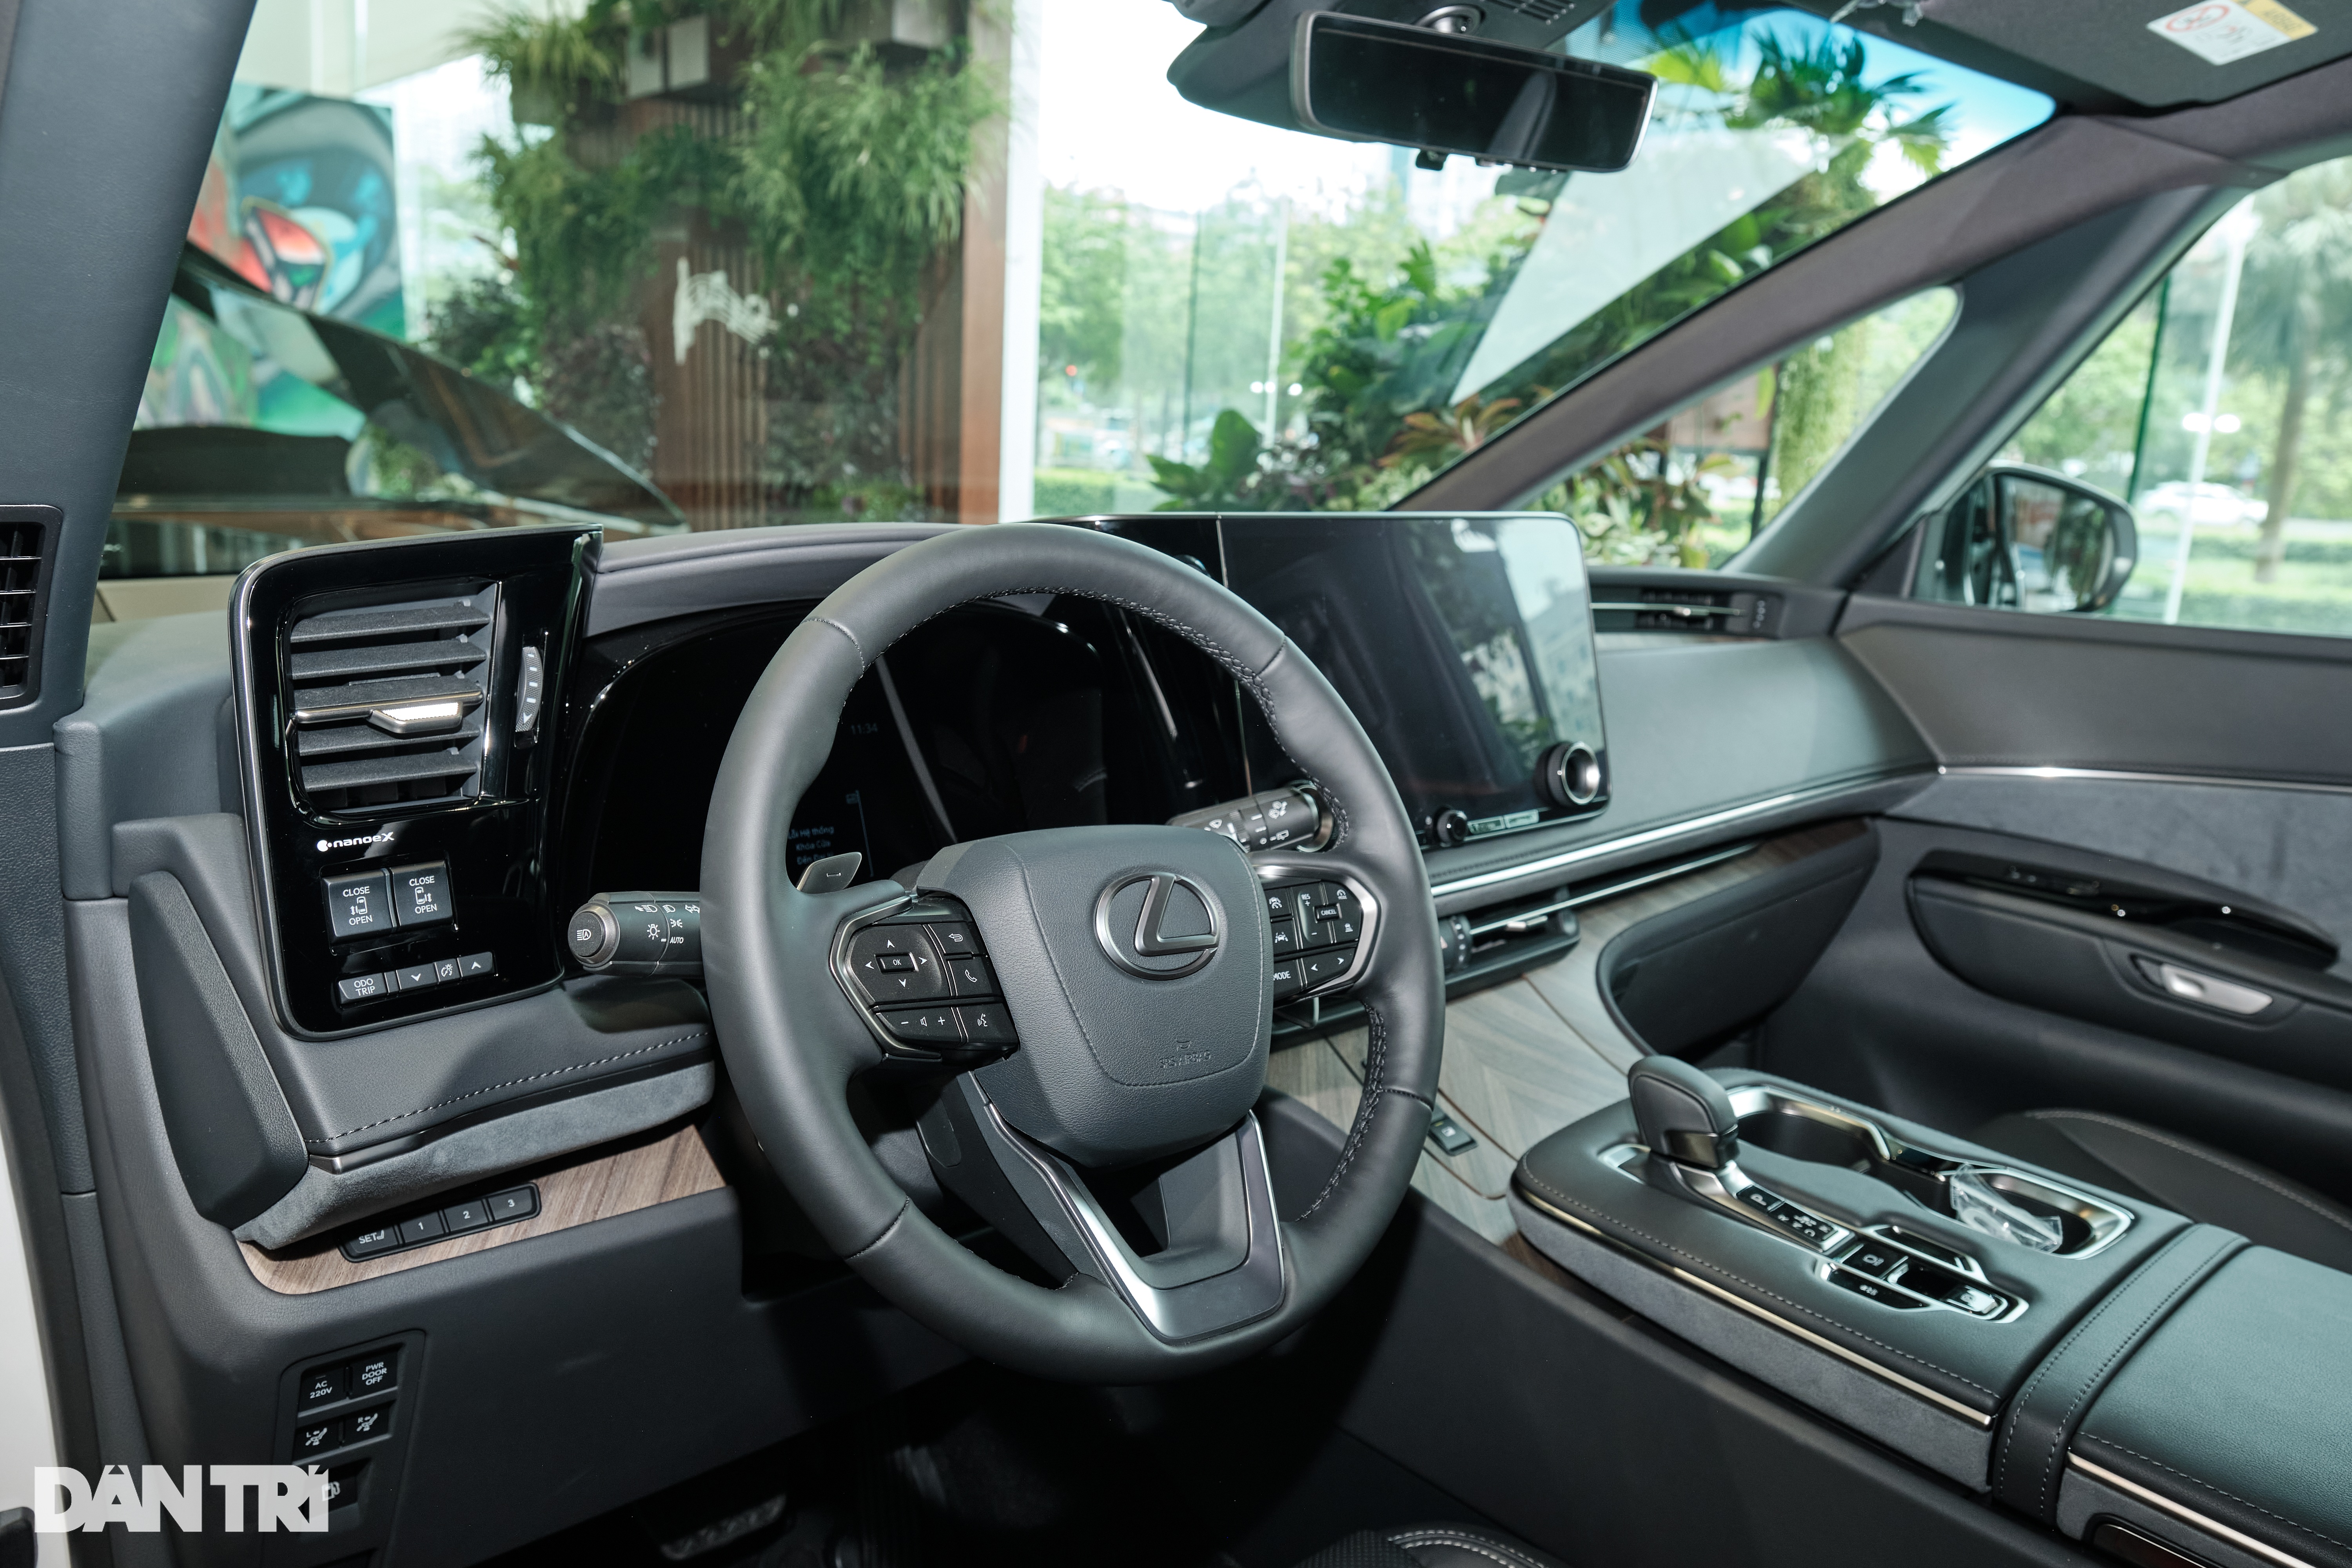 View - Giá 8,71 tỷ đồng, "chuyên cơ mặt đất" Lexus LM 500h 4 chỗ có gì đặc biệt? | Báo Dân trí